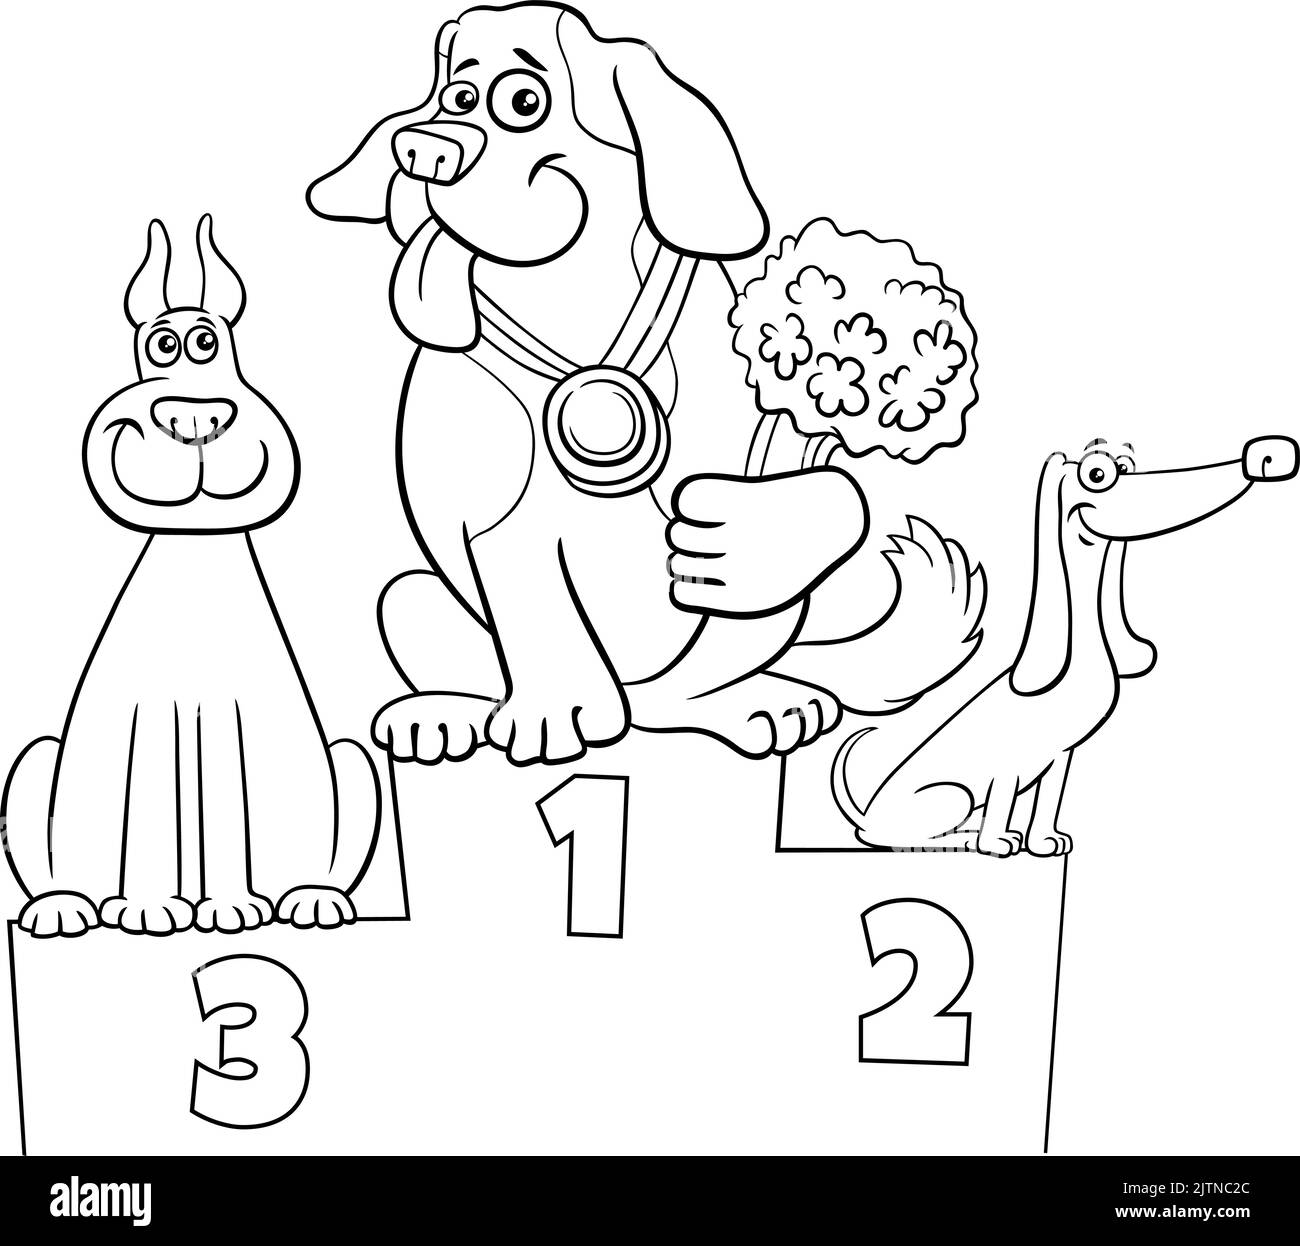 Cartoni animati in bianco e nero illustrazione di tre cani personaggi animali sul podio alla pagina Dog show coloring Illustrazione Vettoriale